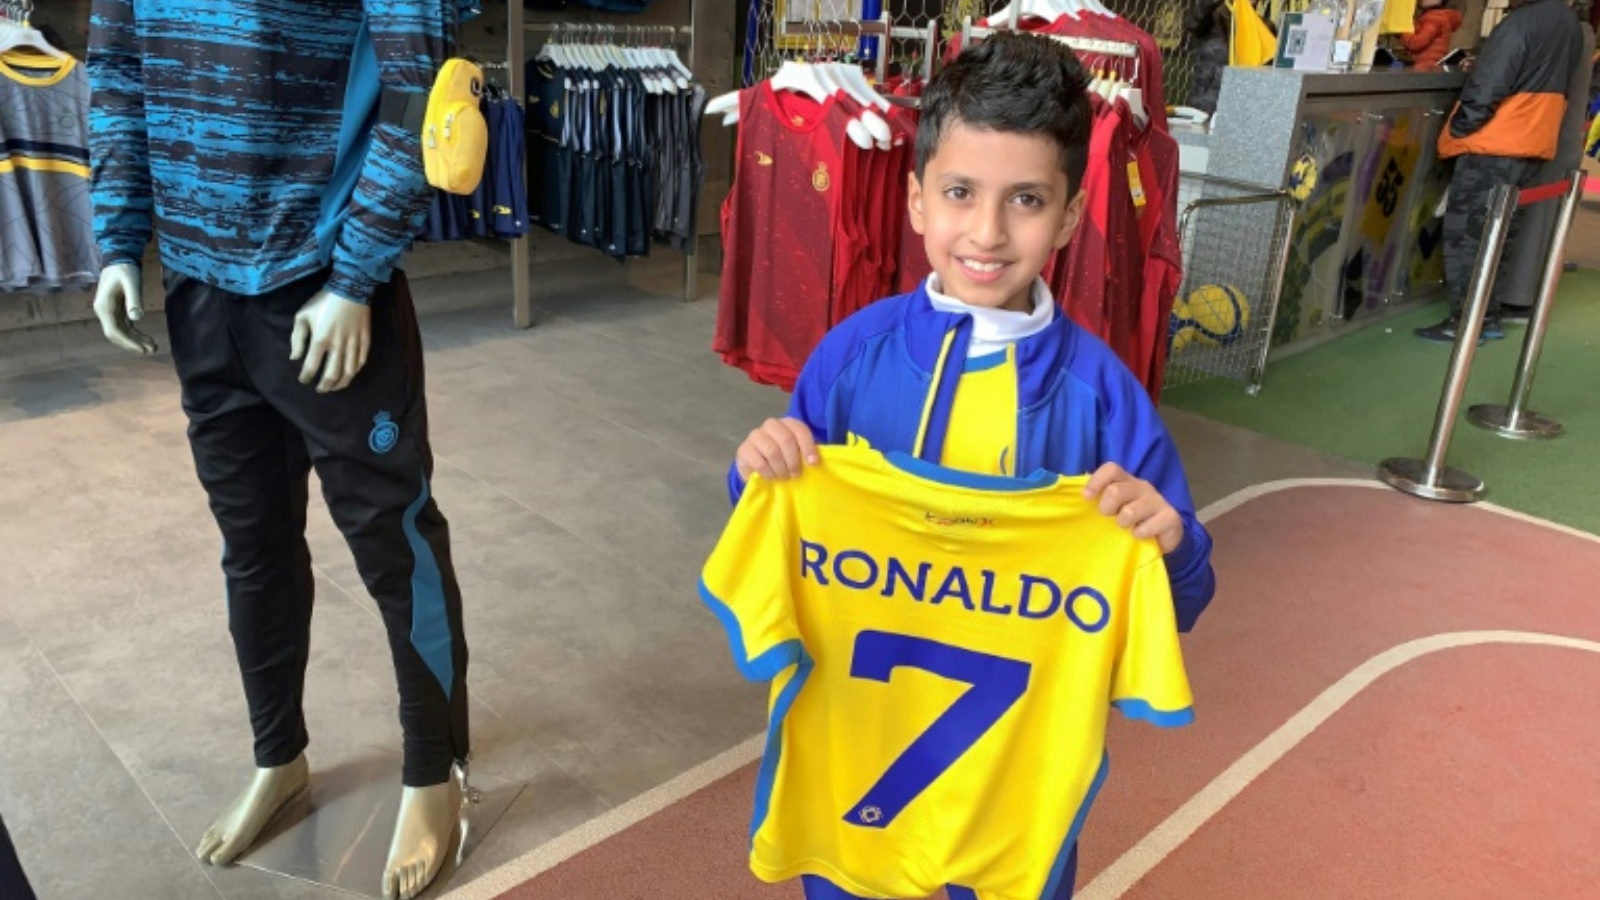 نايف العيبان (9 سنوات) يمسك قميص النصر السعودي الذي يحمل اسم رونالدو ورقم 7 في متجر النادي في الرياض في 31 ديسمبر 2022